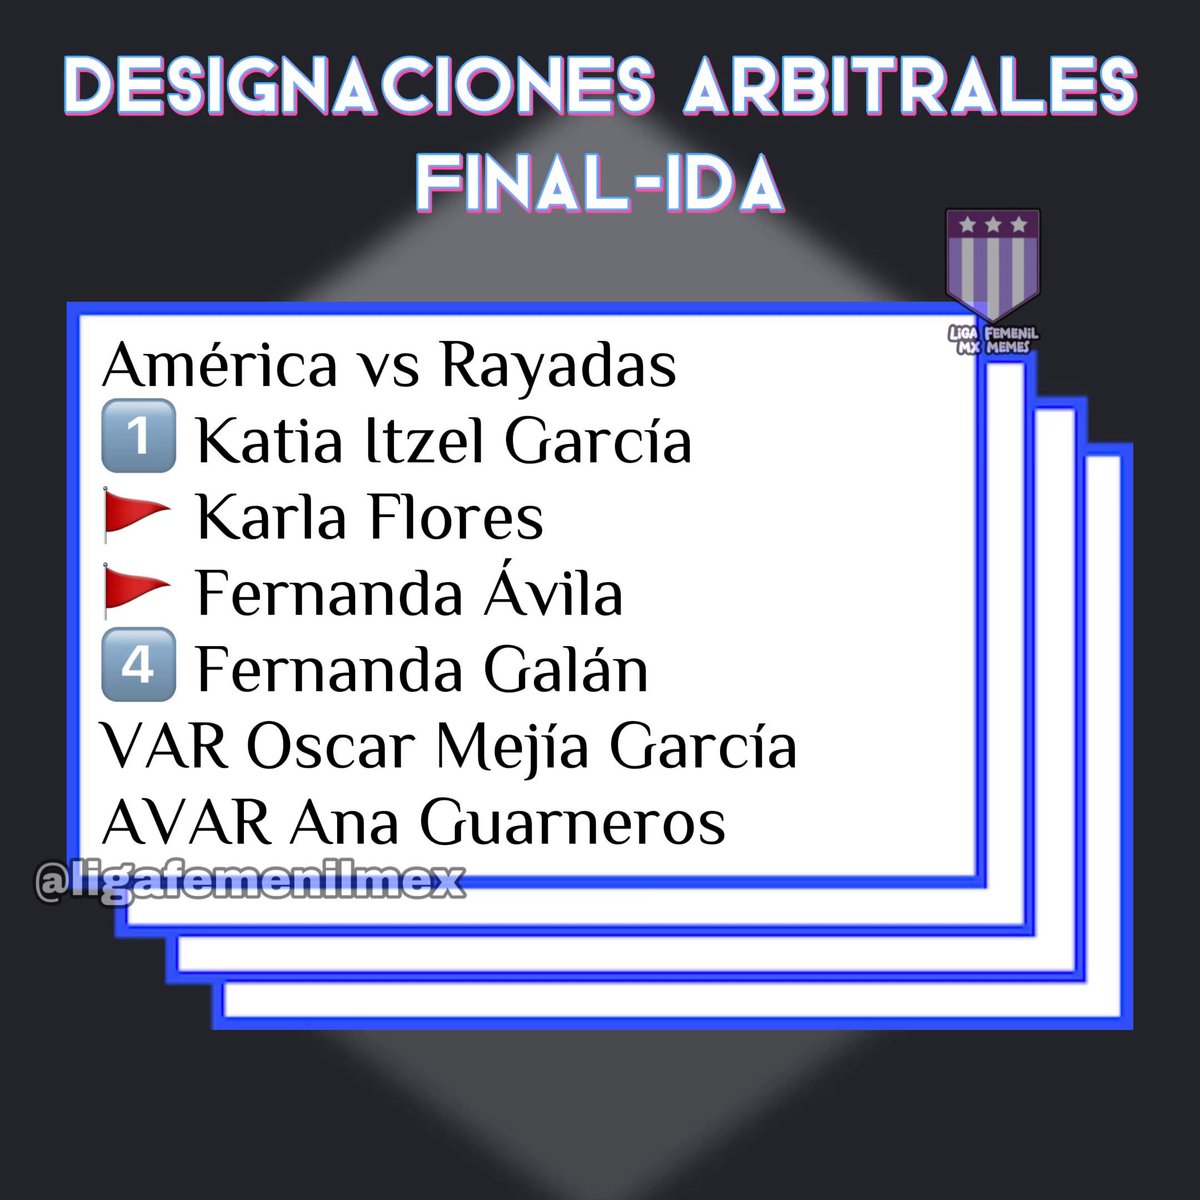 Les compartimos las designaciones arbitrales para la ida de la gran final 🤡 #LigaBBVAMXFemenil #VamosPorEllas #FútbolFemenino